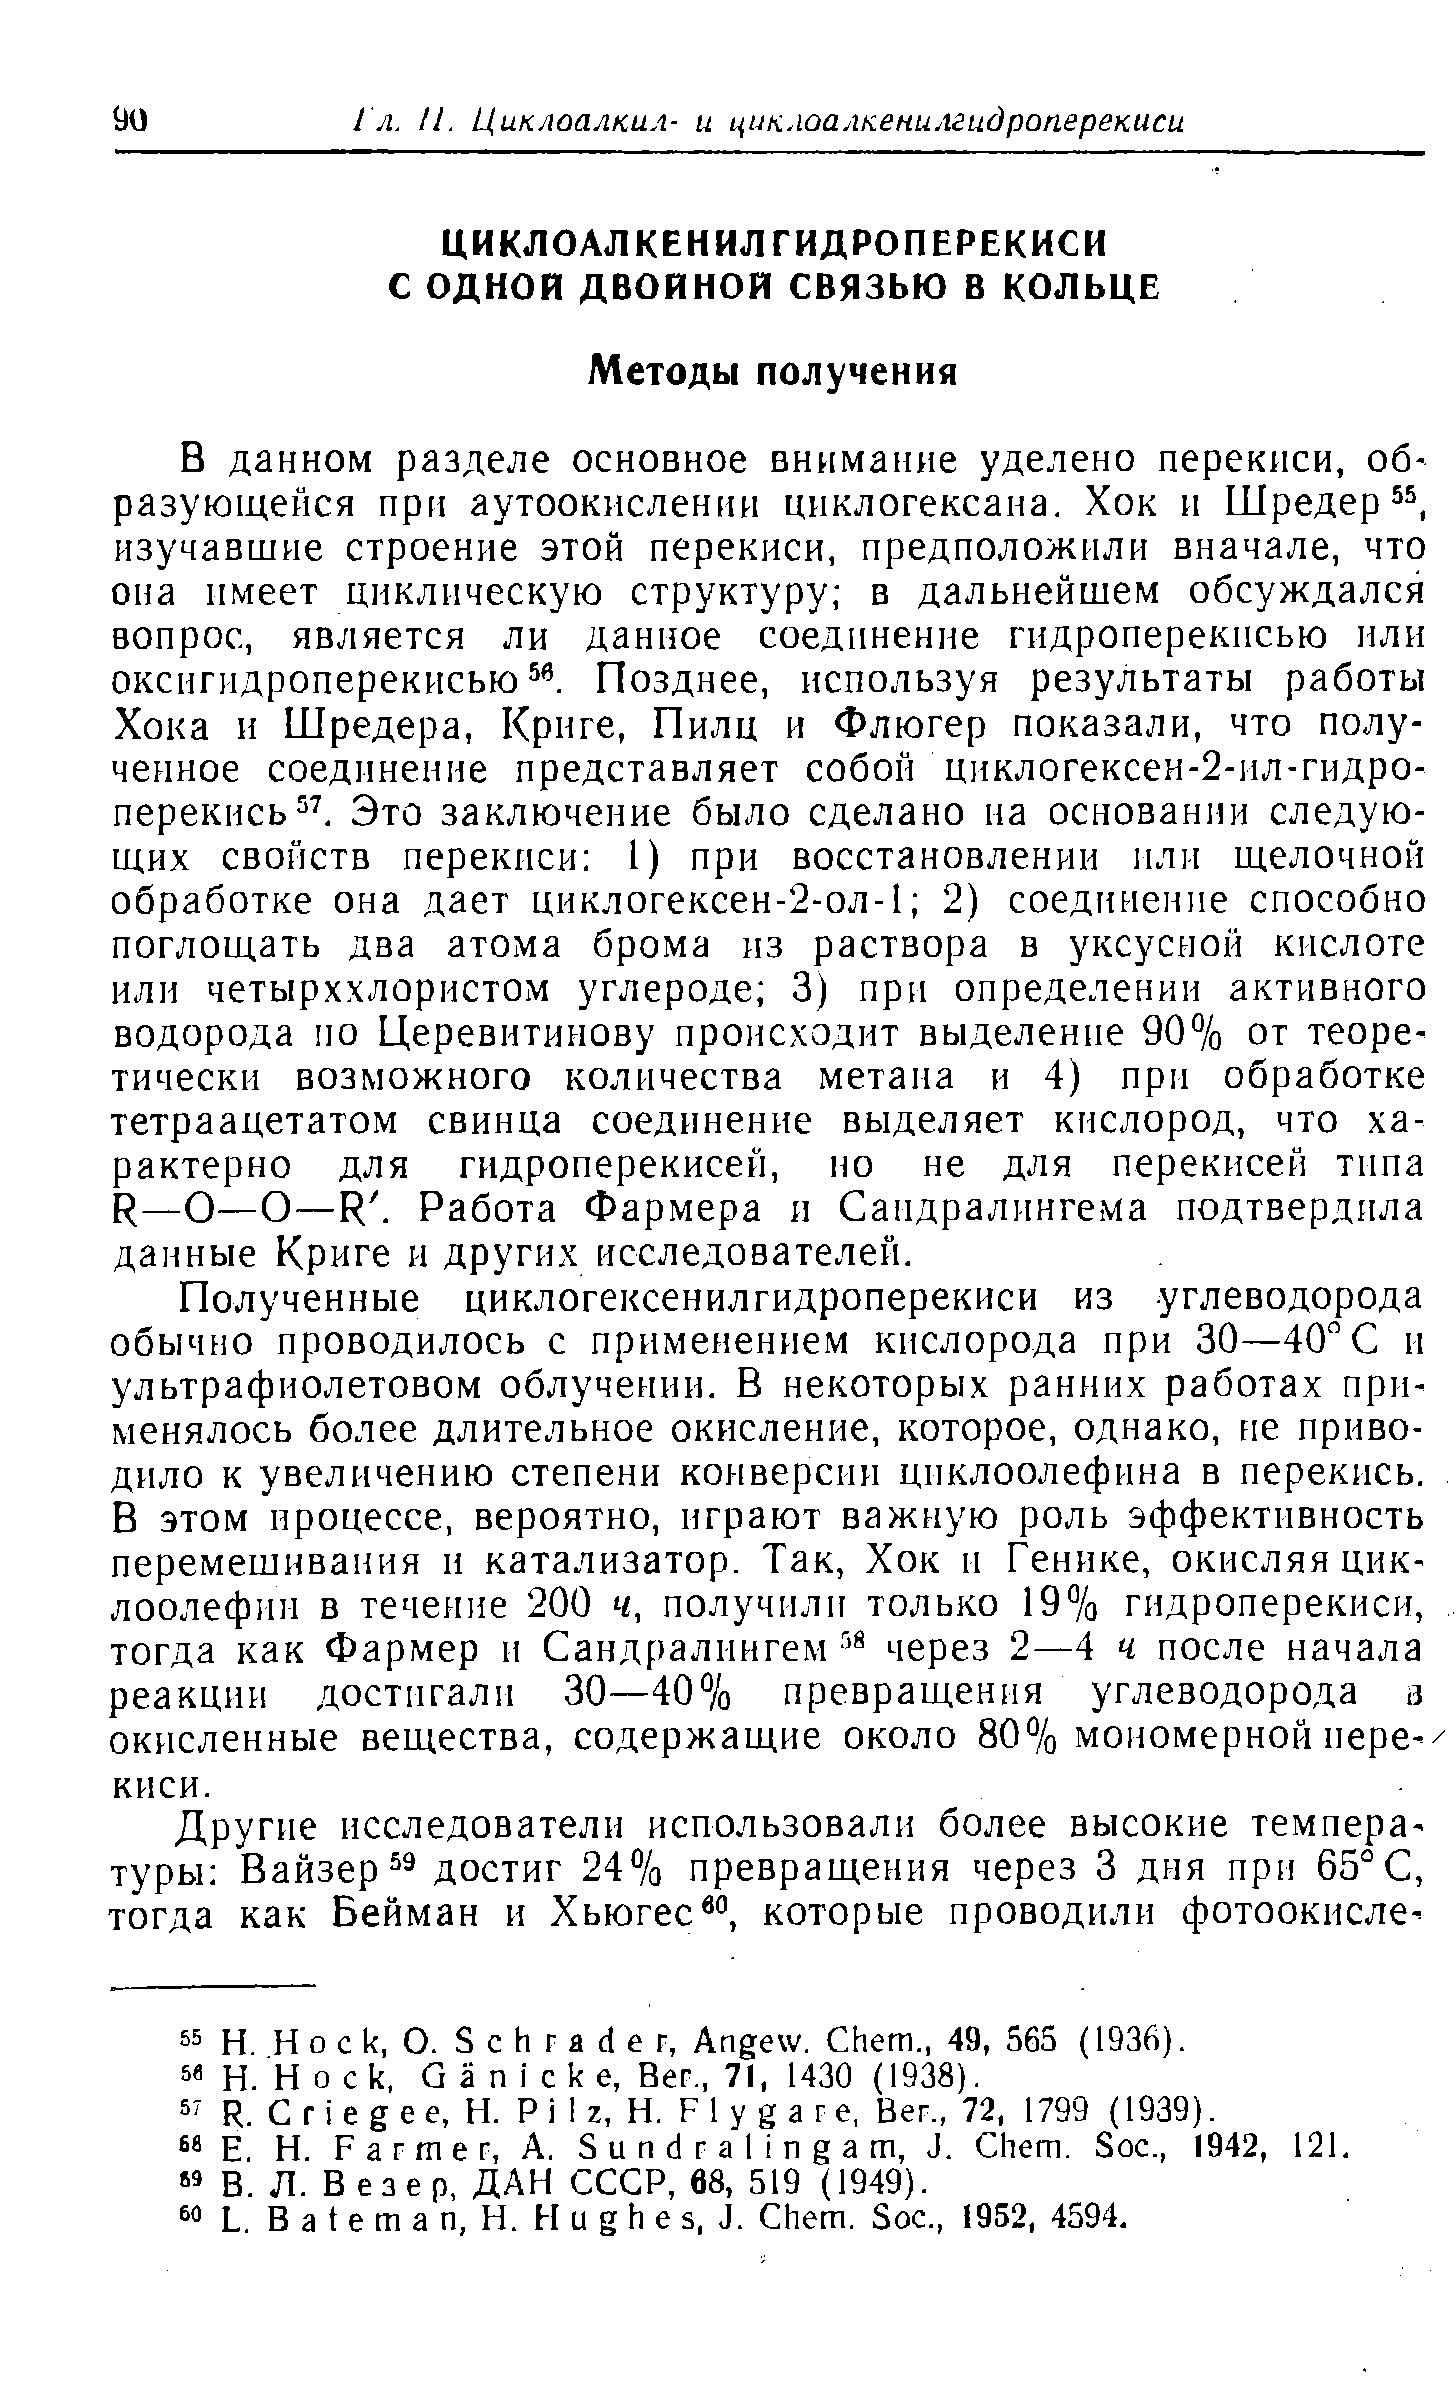 Вез ер, ДАН СССР, 68, 519 (1949).